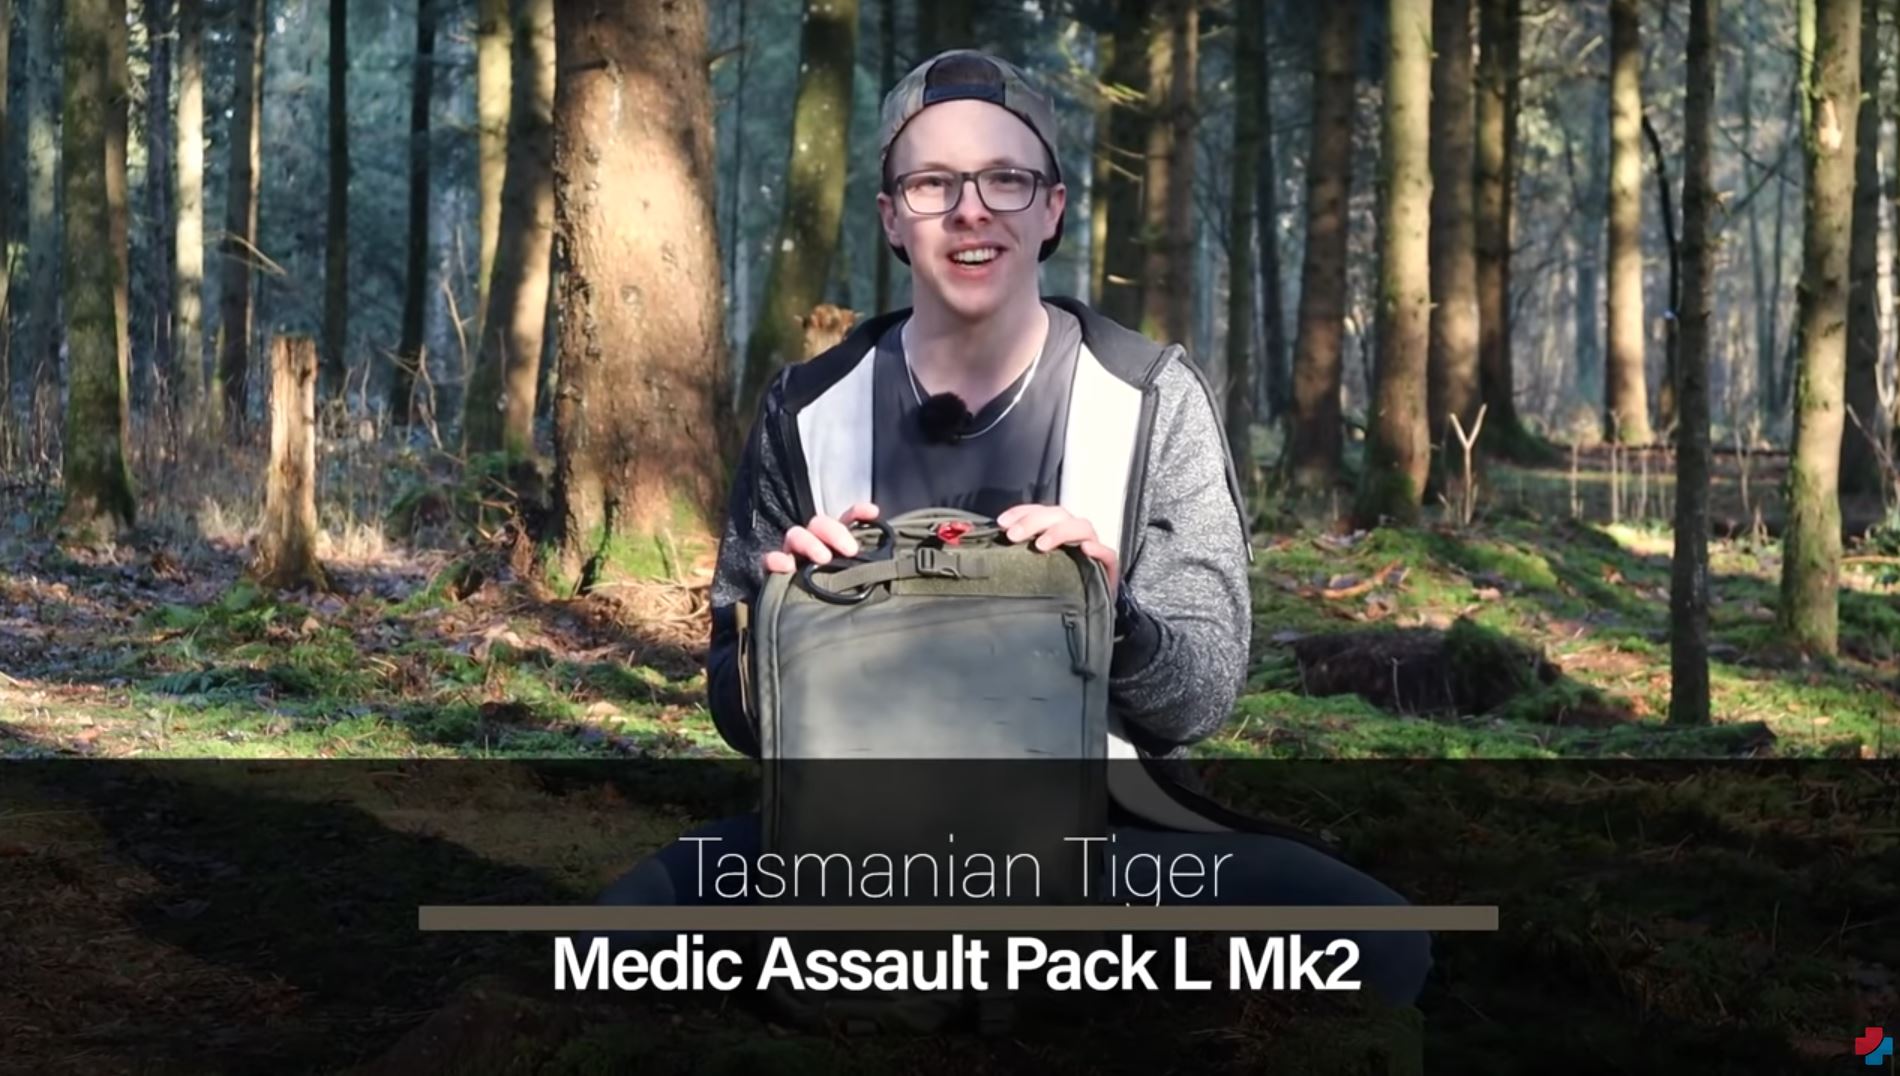 In seinem YouTube-Video präsentiert Bavaria Medic den taktischen Einsatzrucksack TT Medic Assault Pack L MK 2 von Tasmanian Tiger.